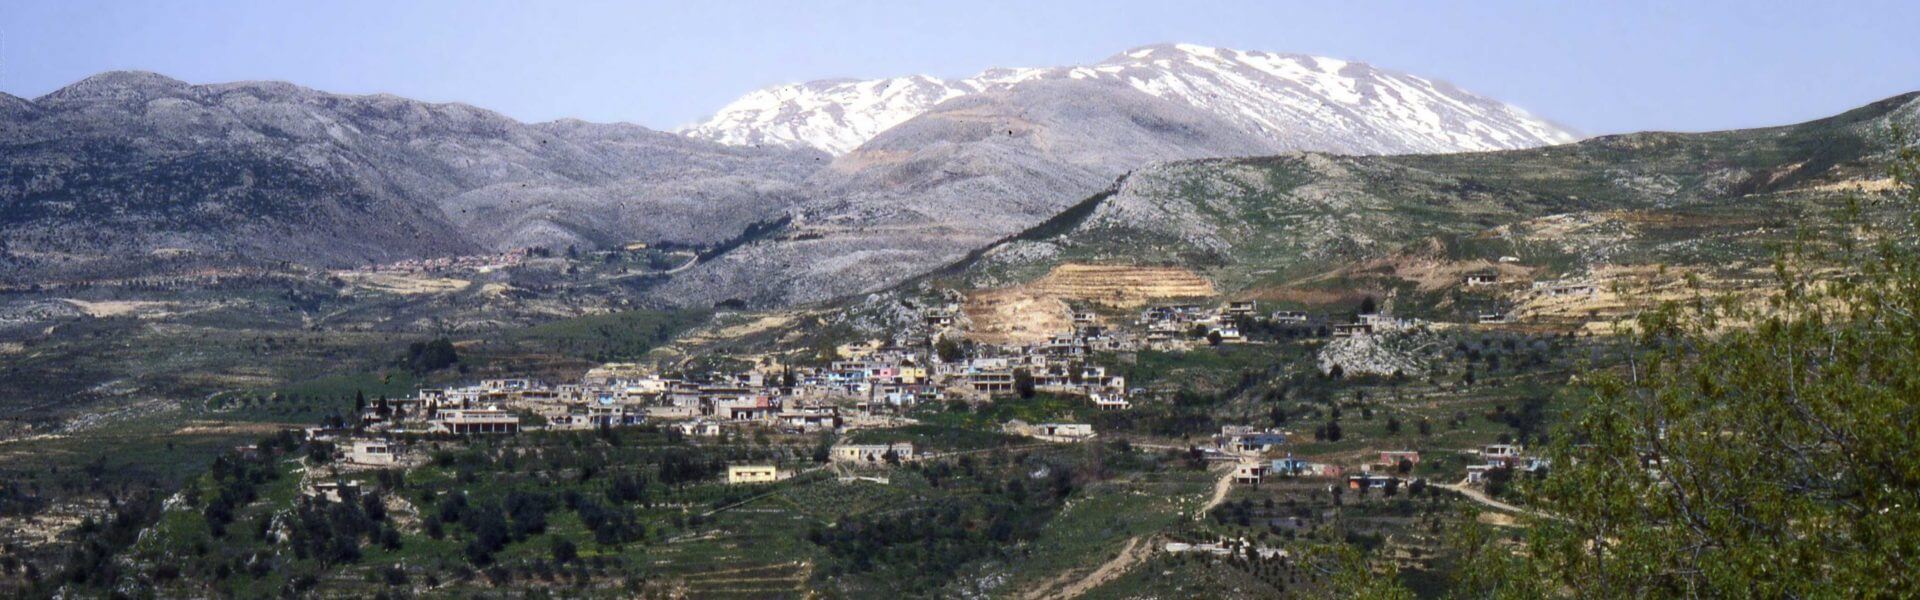 הכפר עין קיניא על רקע הר החרמון המושלג